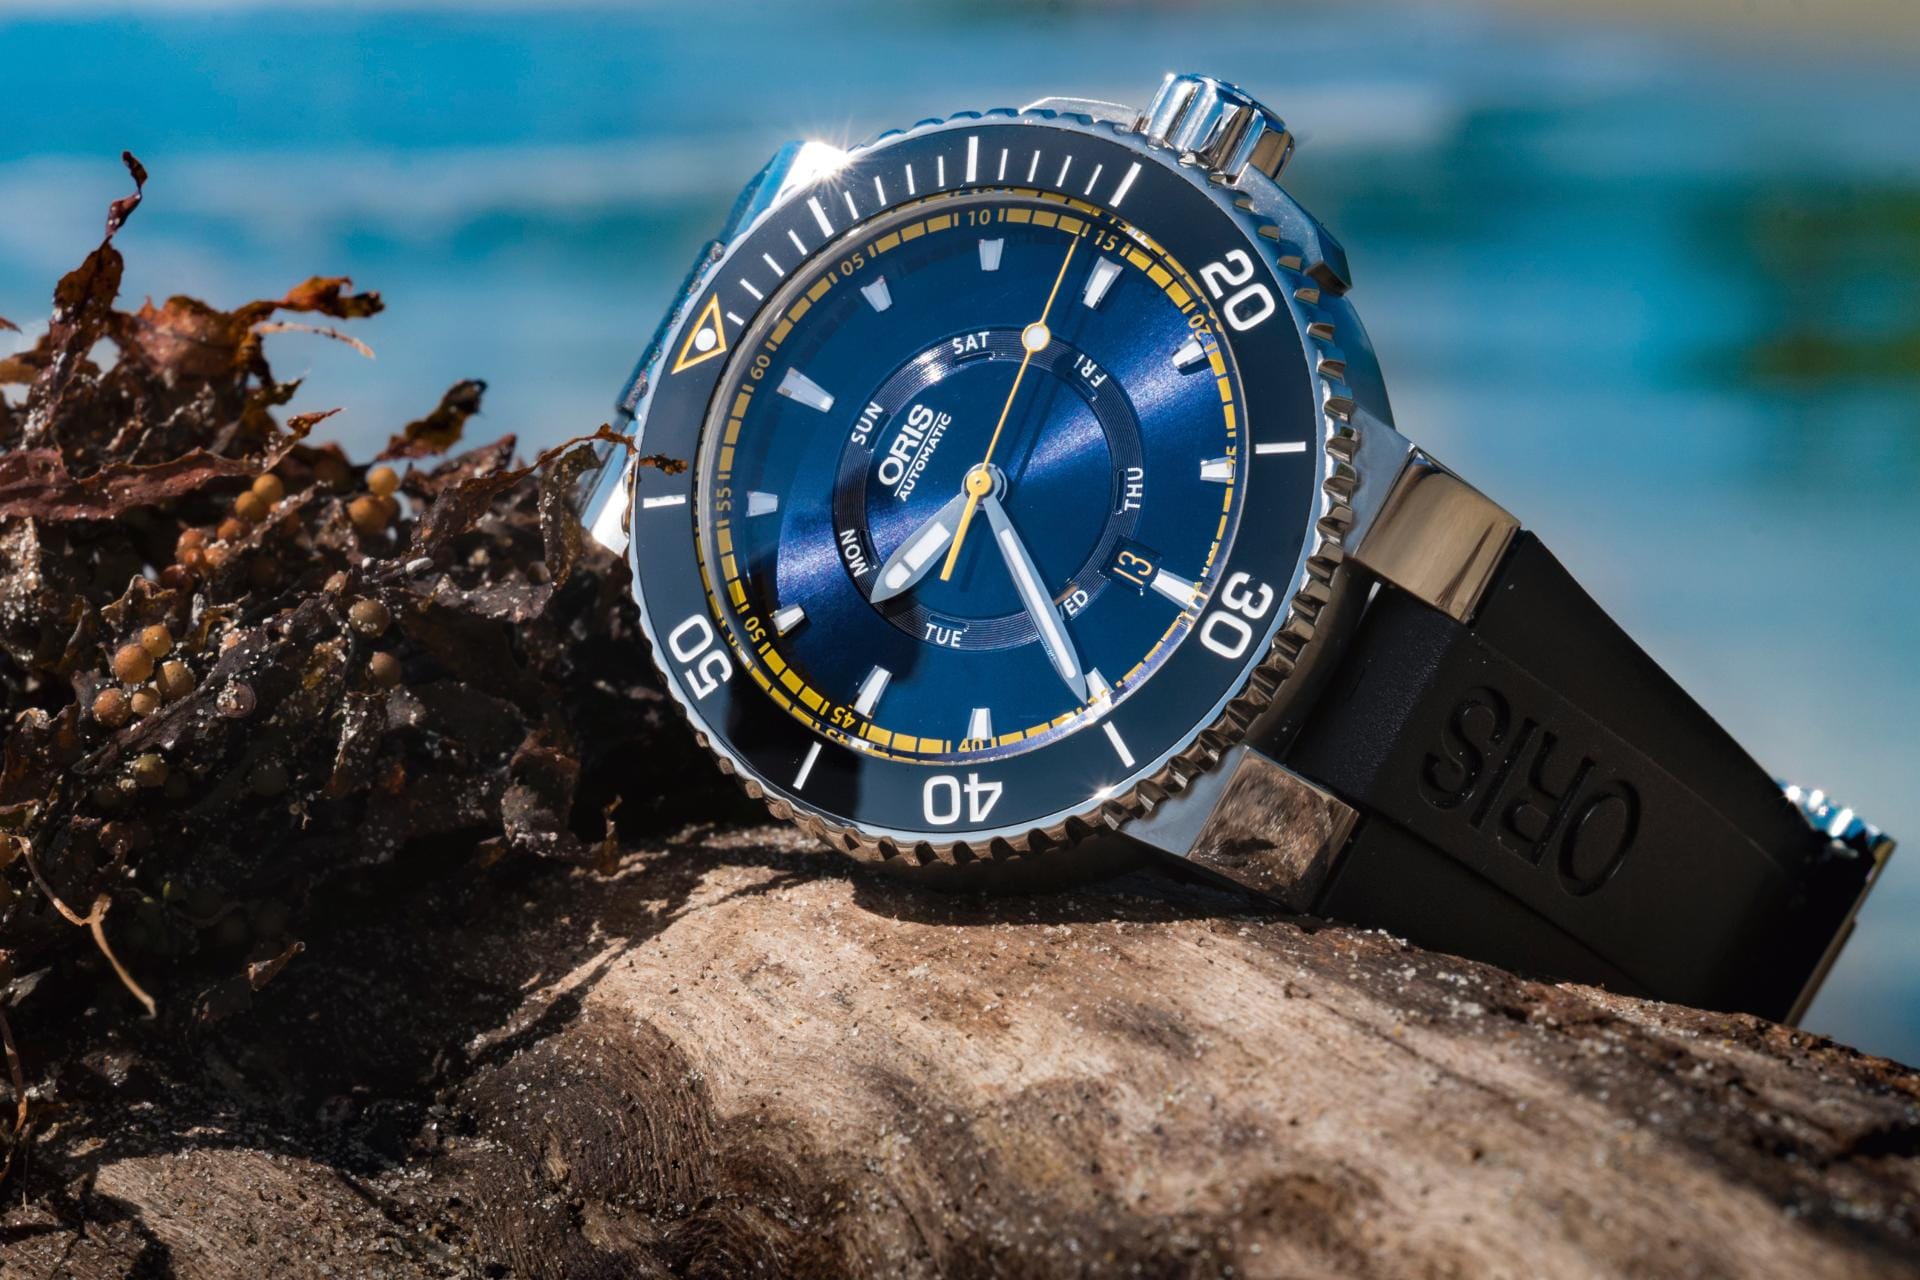 Abseits von Uhren der Luxusklasse gibt es auch in unteren Preissegmenten schicke blaue Uhren wie etwa die Oris Great Barrier Reef Limited Edition II für 1950 Euro. Das Modell ist ein gutes Beispiel für Uhren mit dunklen Blautönen, die immer öfter zu sehen sind.